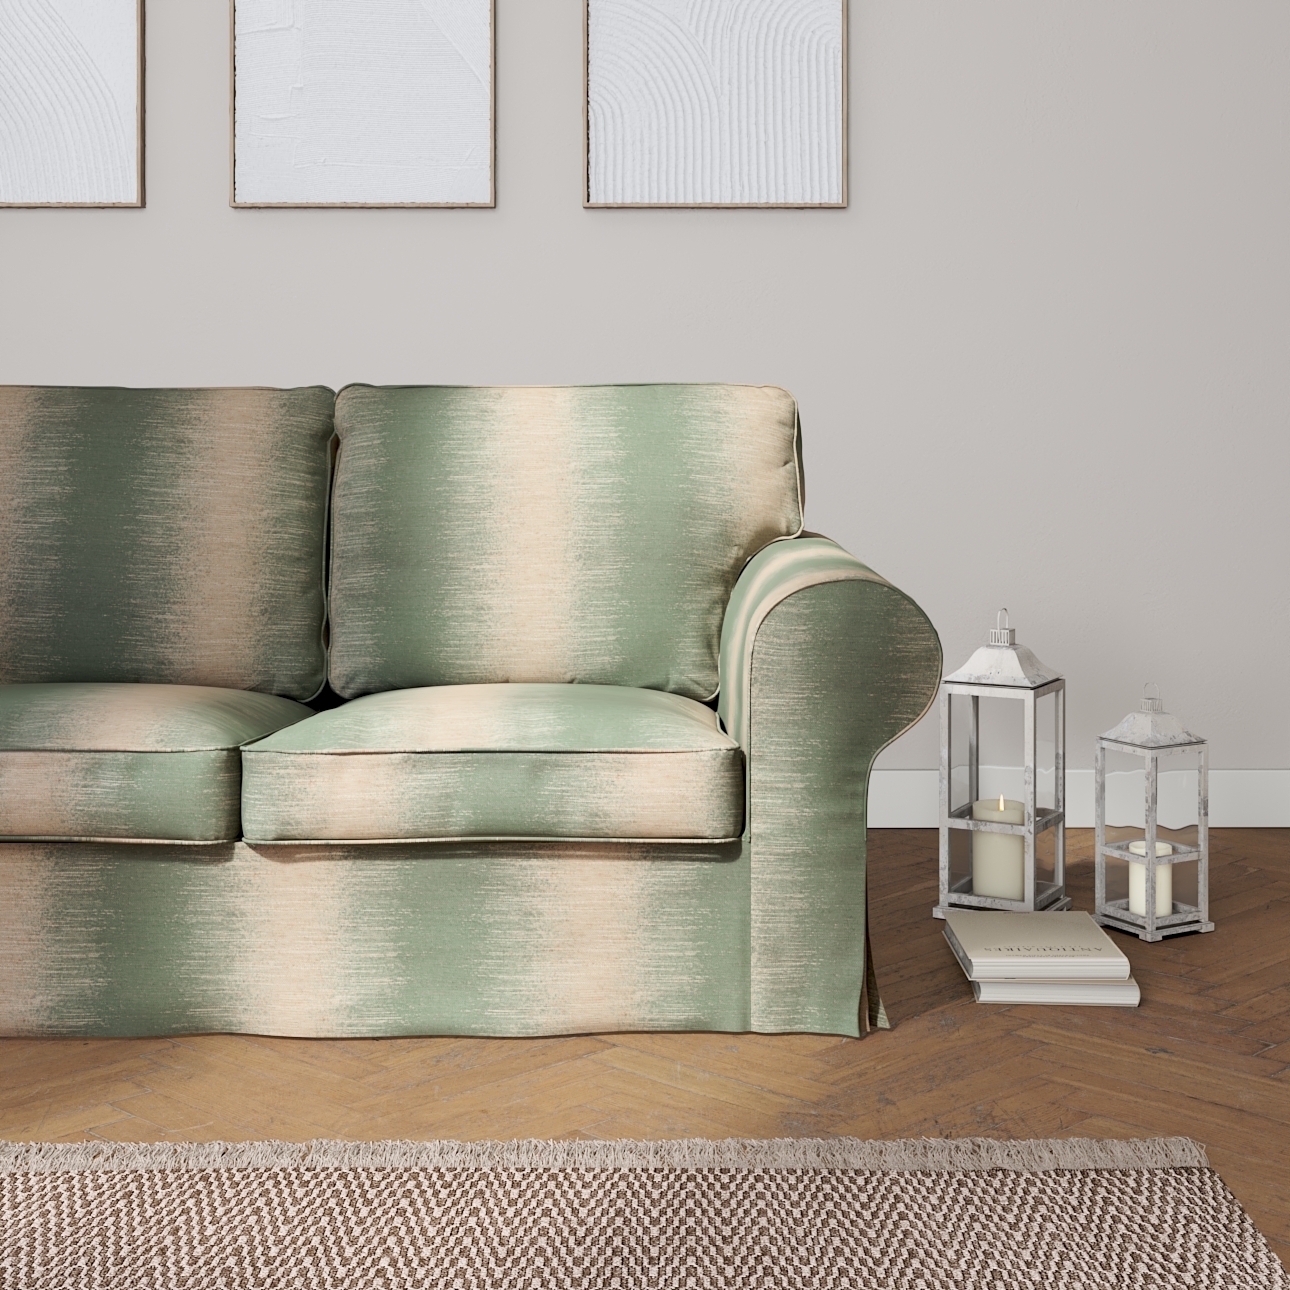 Bezug für Ektorp 2-Sitzer Schlafsofa NEUES Modell, grün-beige, Sofabezug fü günstig online kaufen